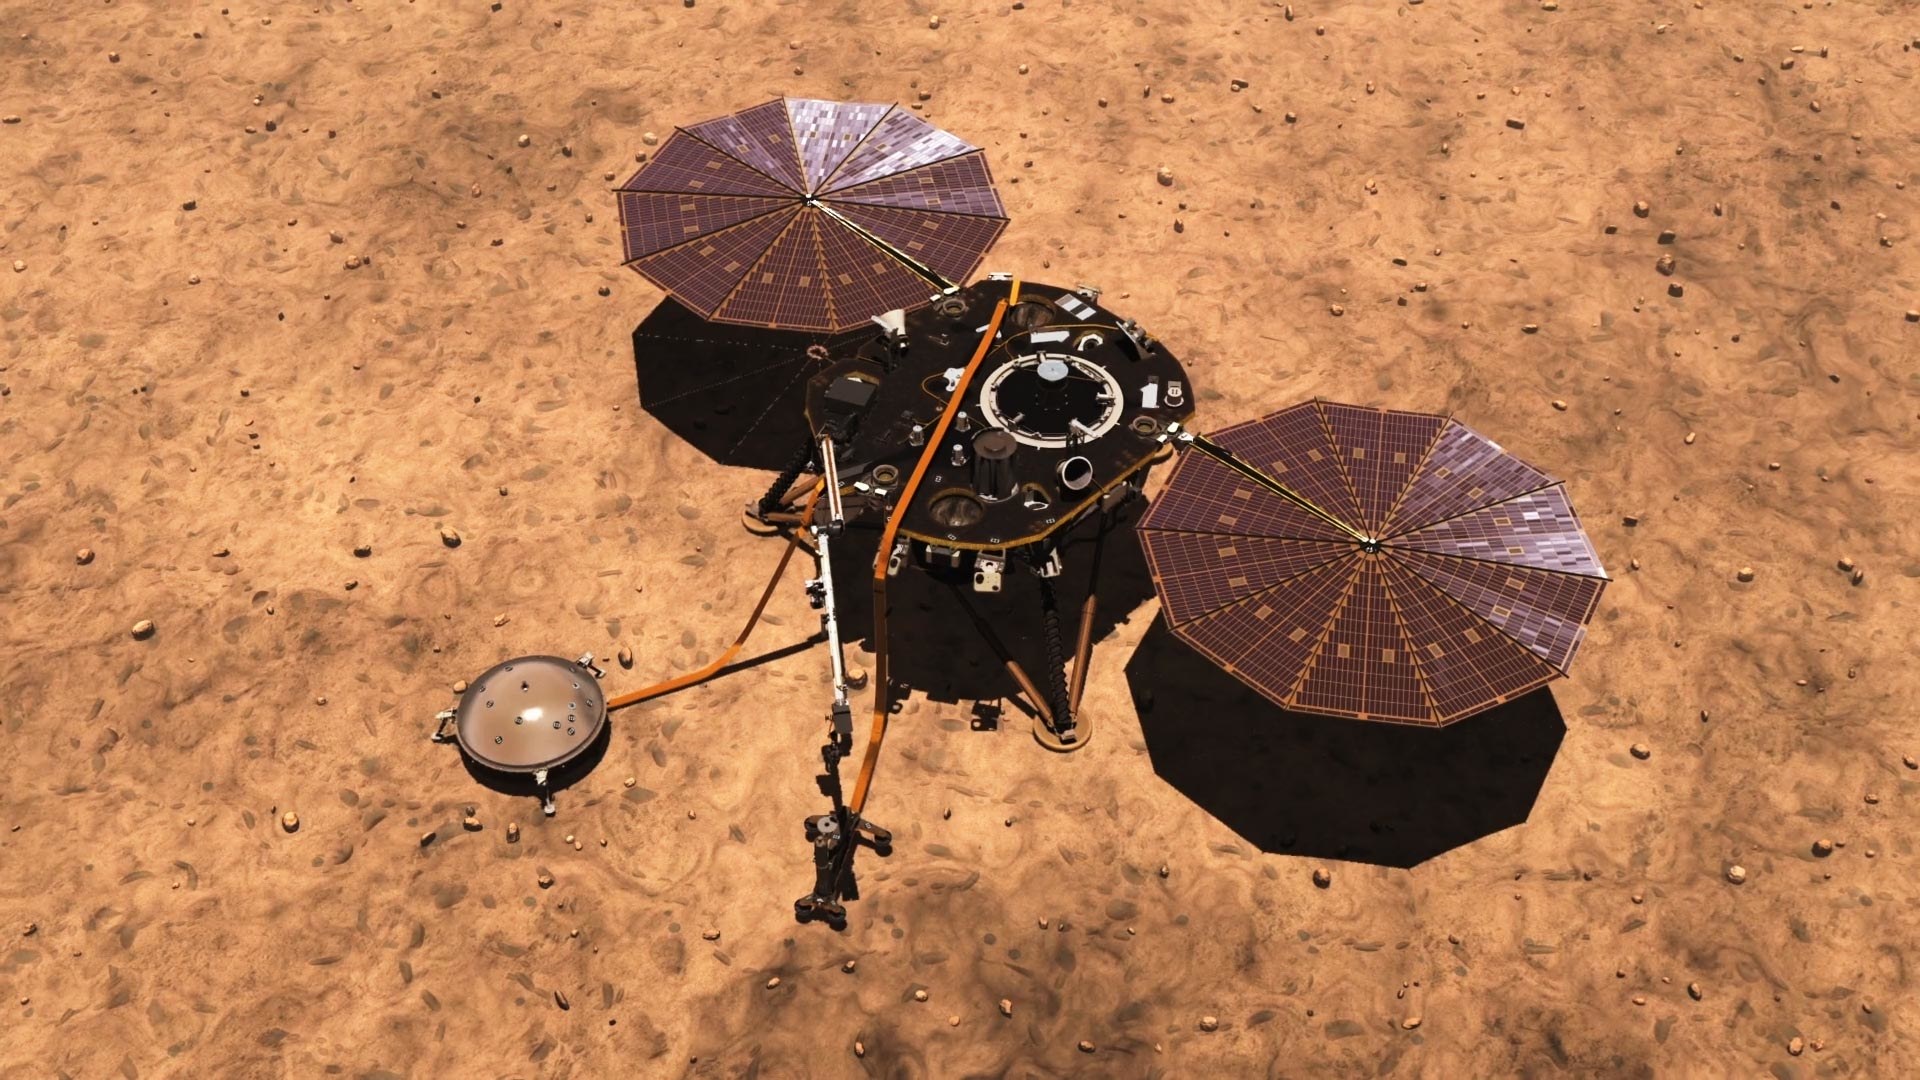 Марсианский ветер почистил солнечные панели зонда InSight - 1